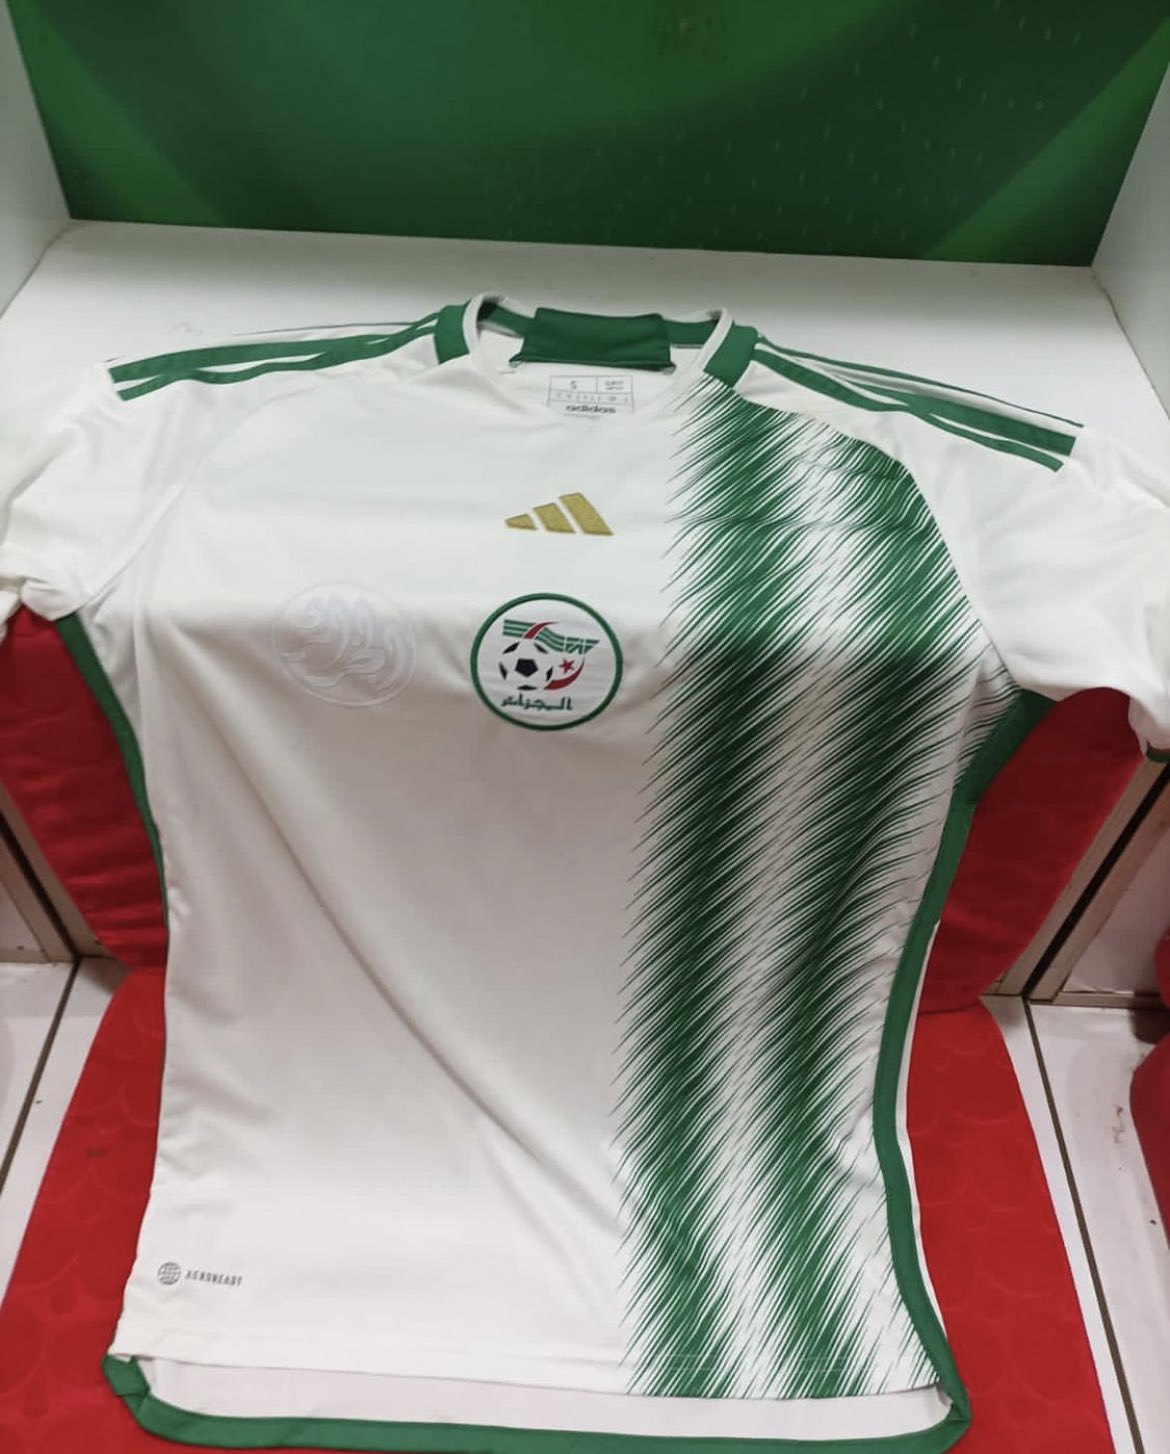 Algérie Football Média 🇩🇿 on X: "Notre nouveau maillot 😍💚🇩🇿  https://t.co/Gvmj69MxBy" / X